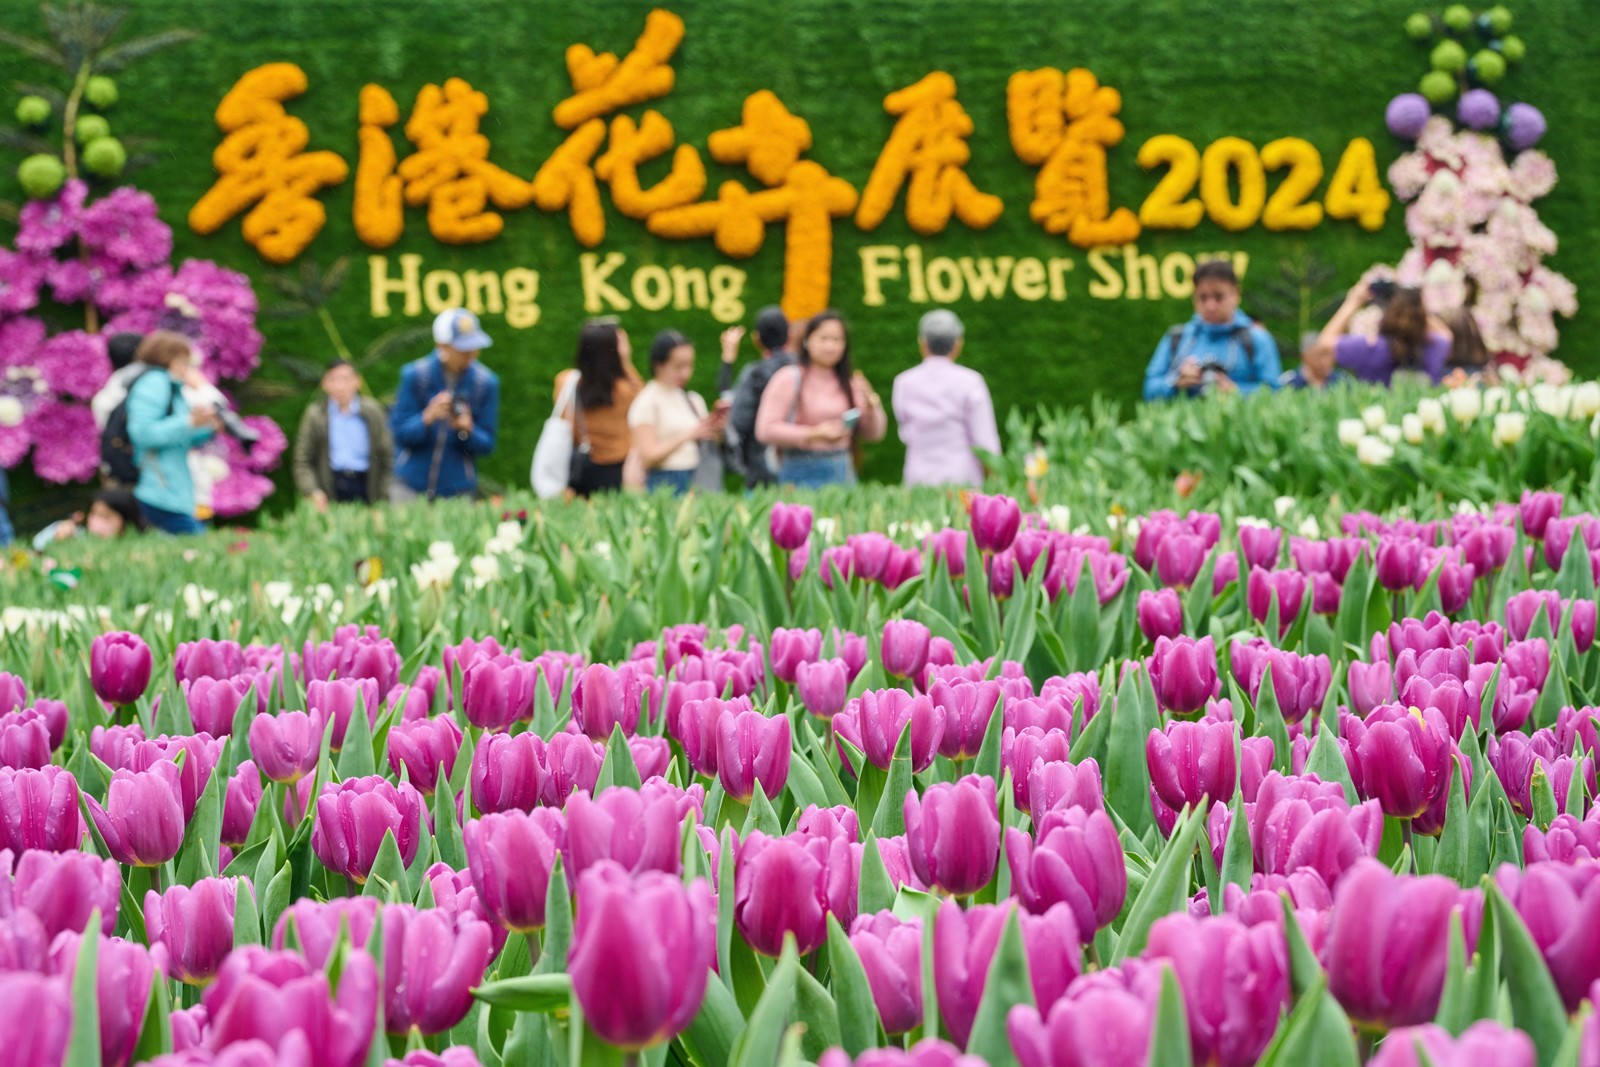 Hong Kong Flower Show (2024)